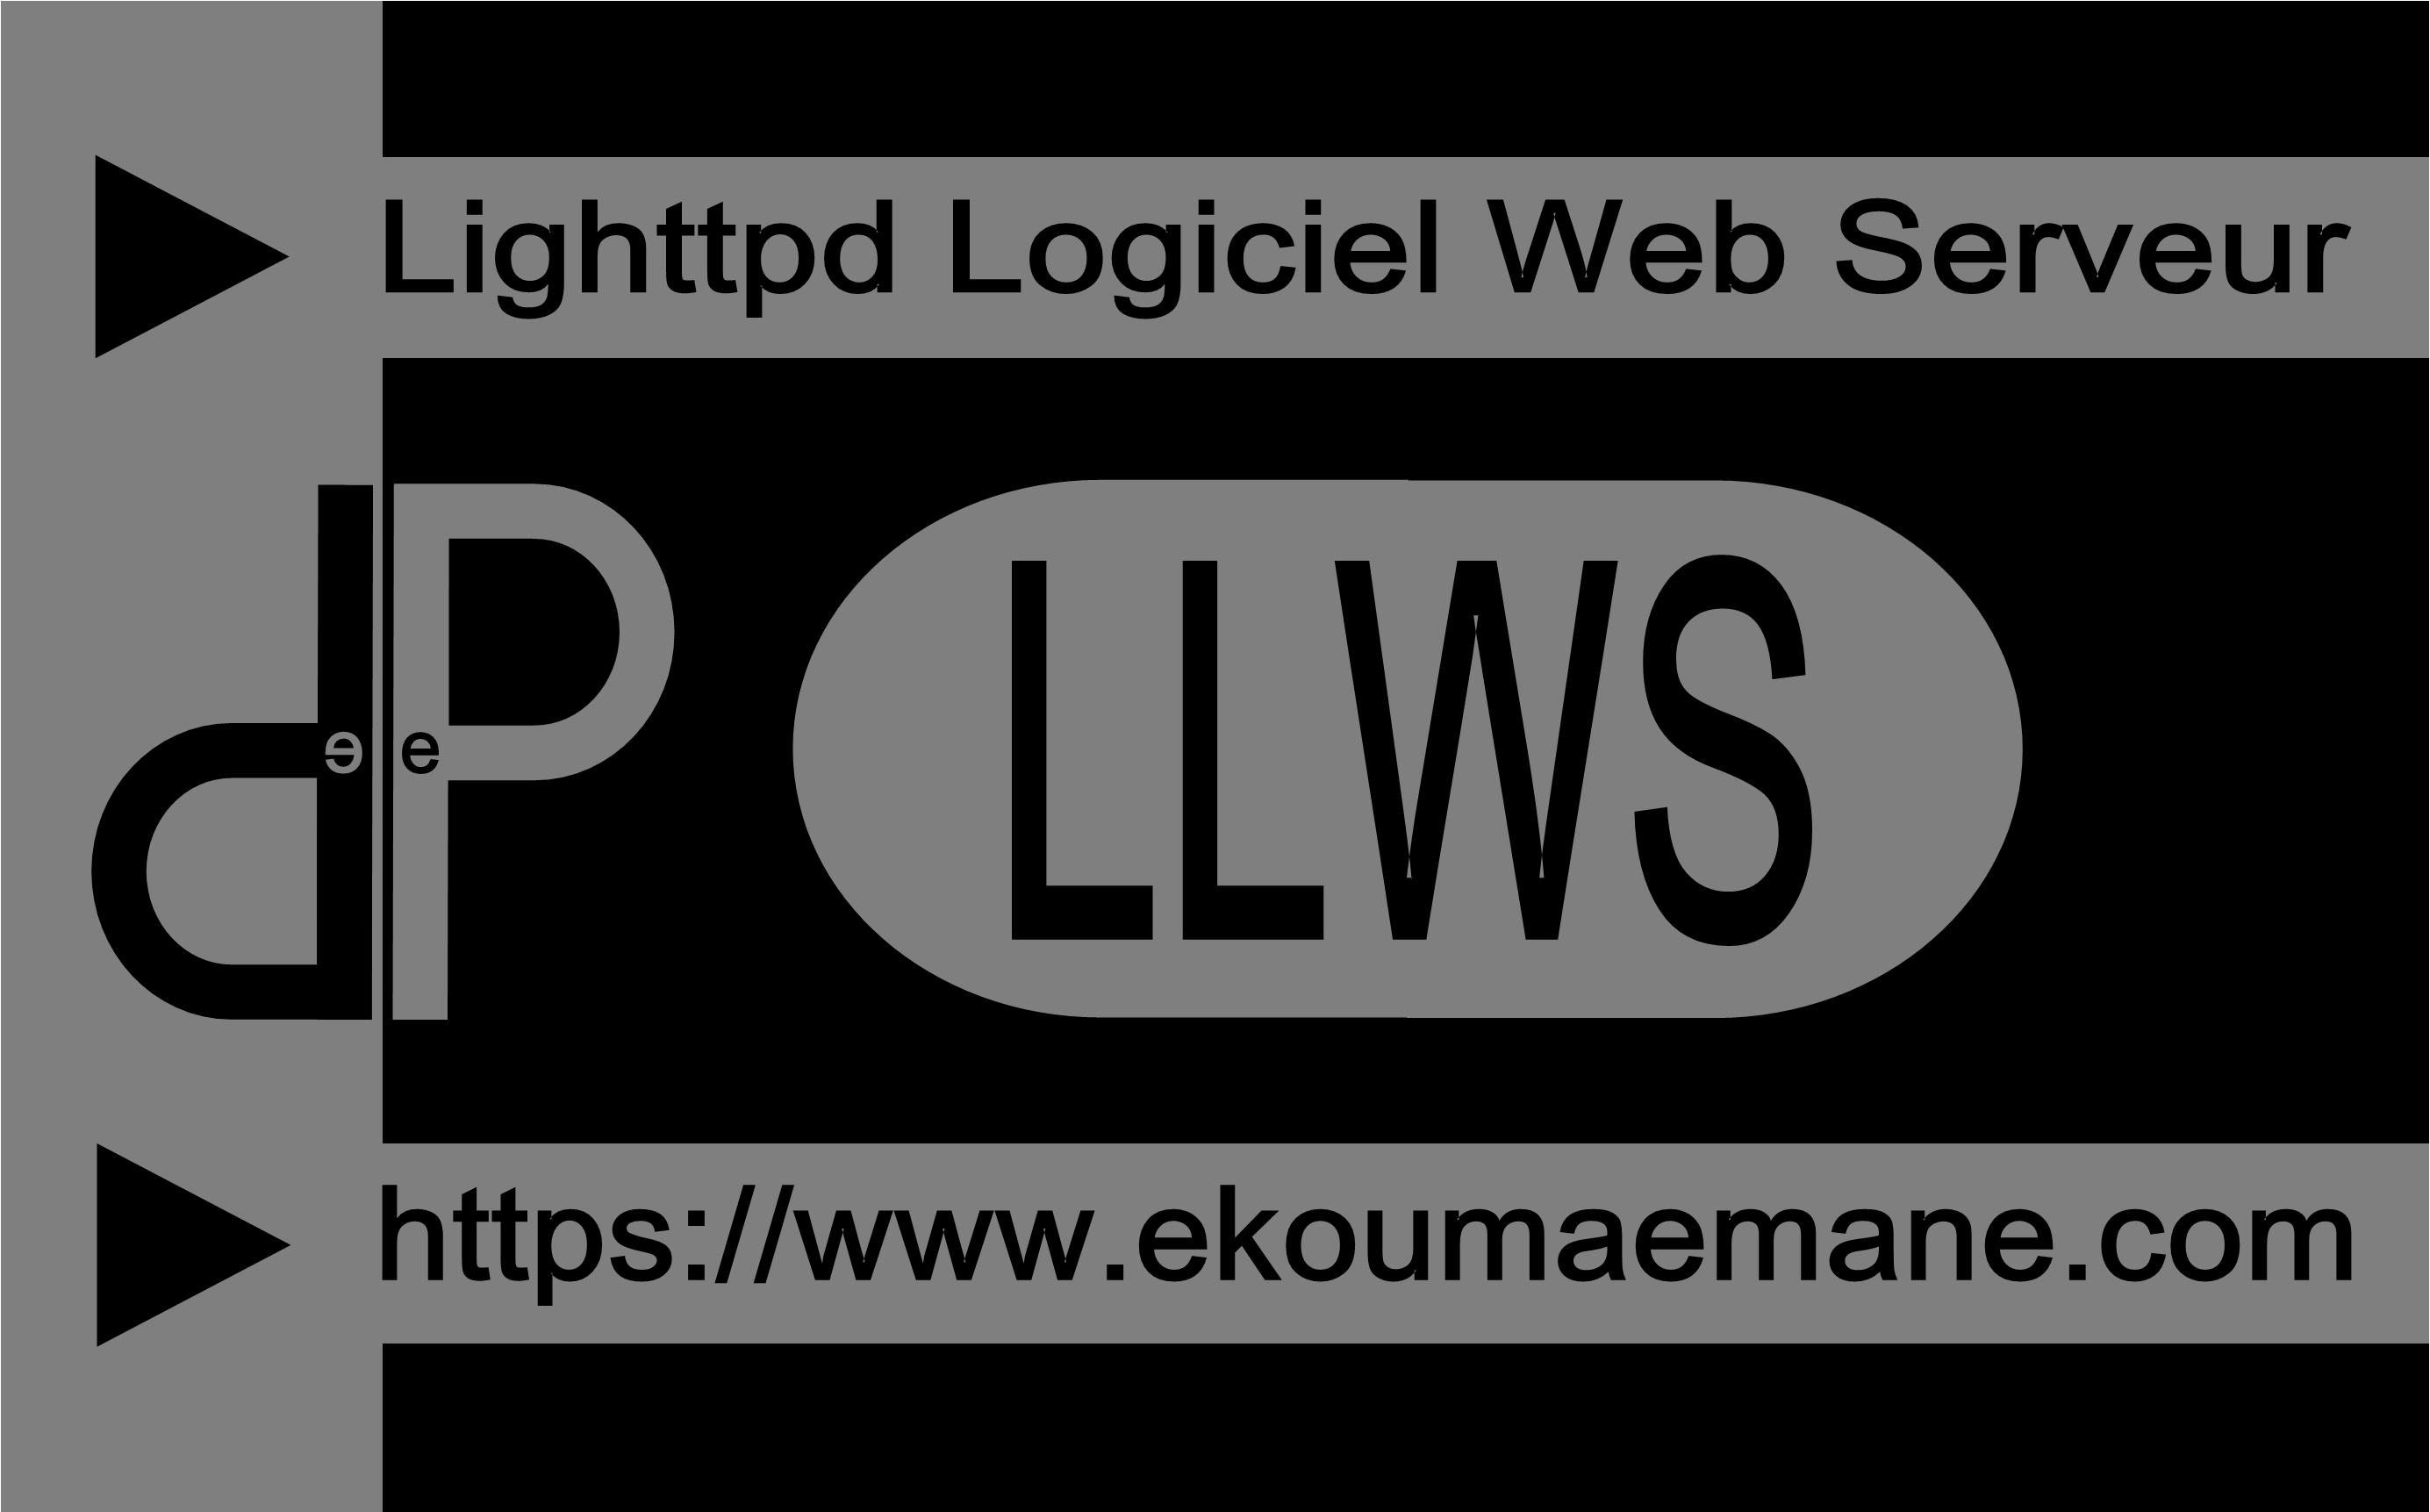 Lighttpd Logiciel de Serveur | Web sécurisé, rapide et flexible